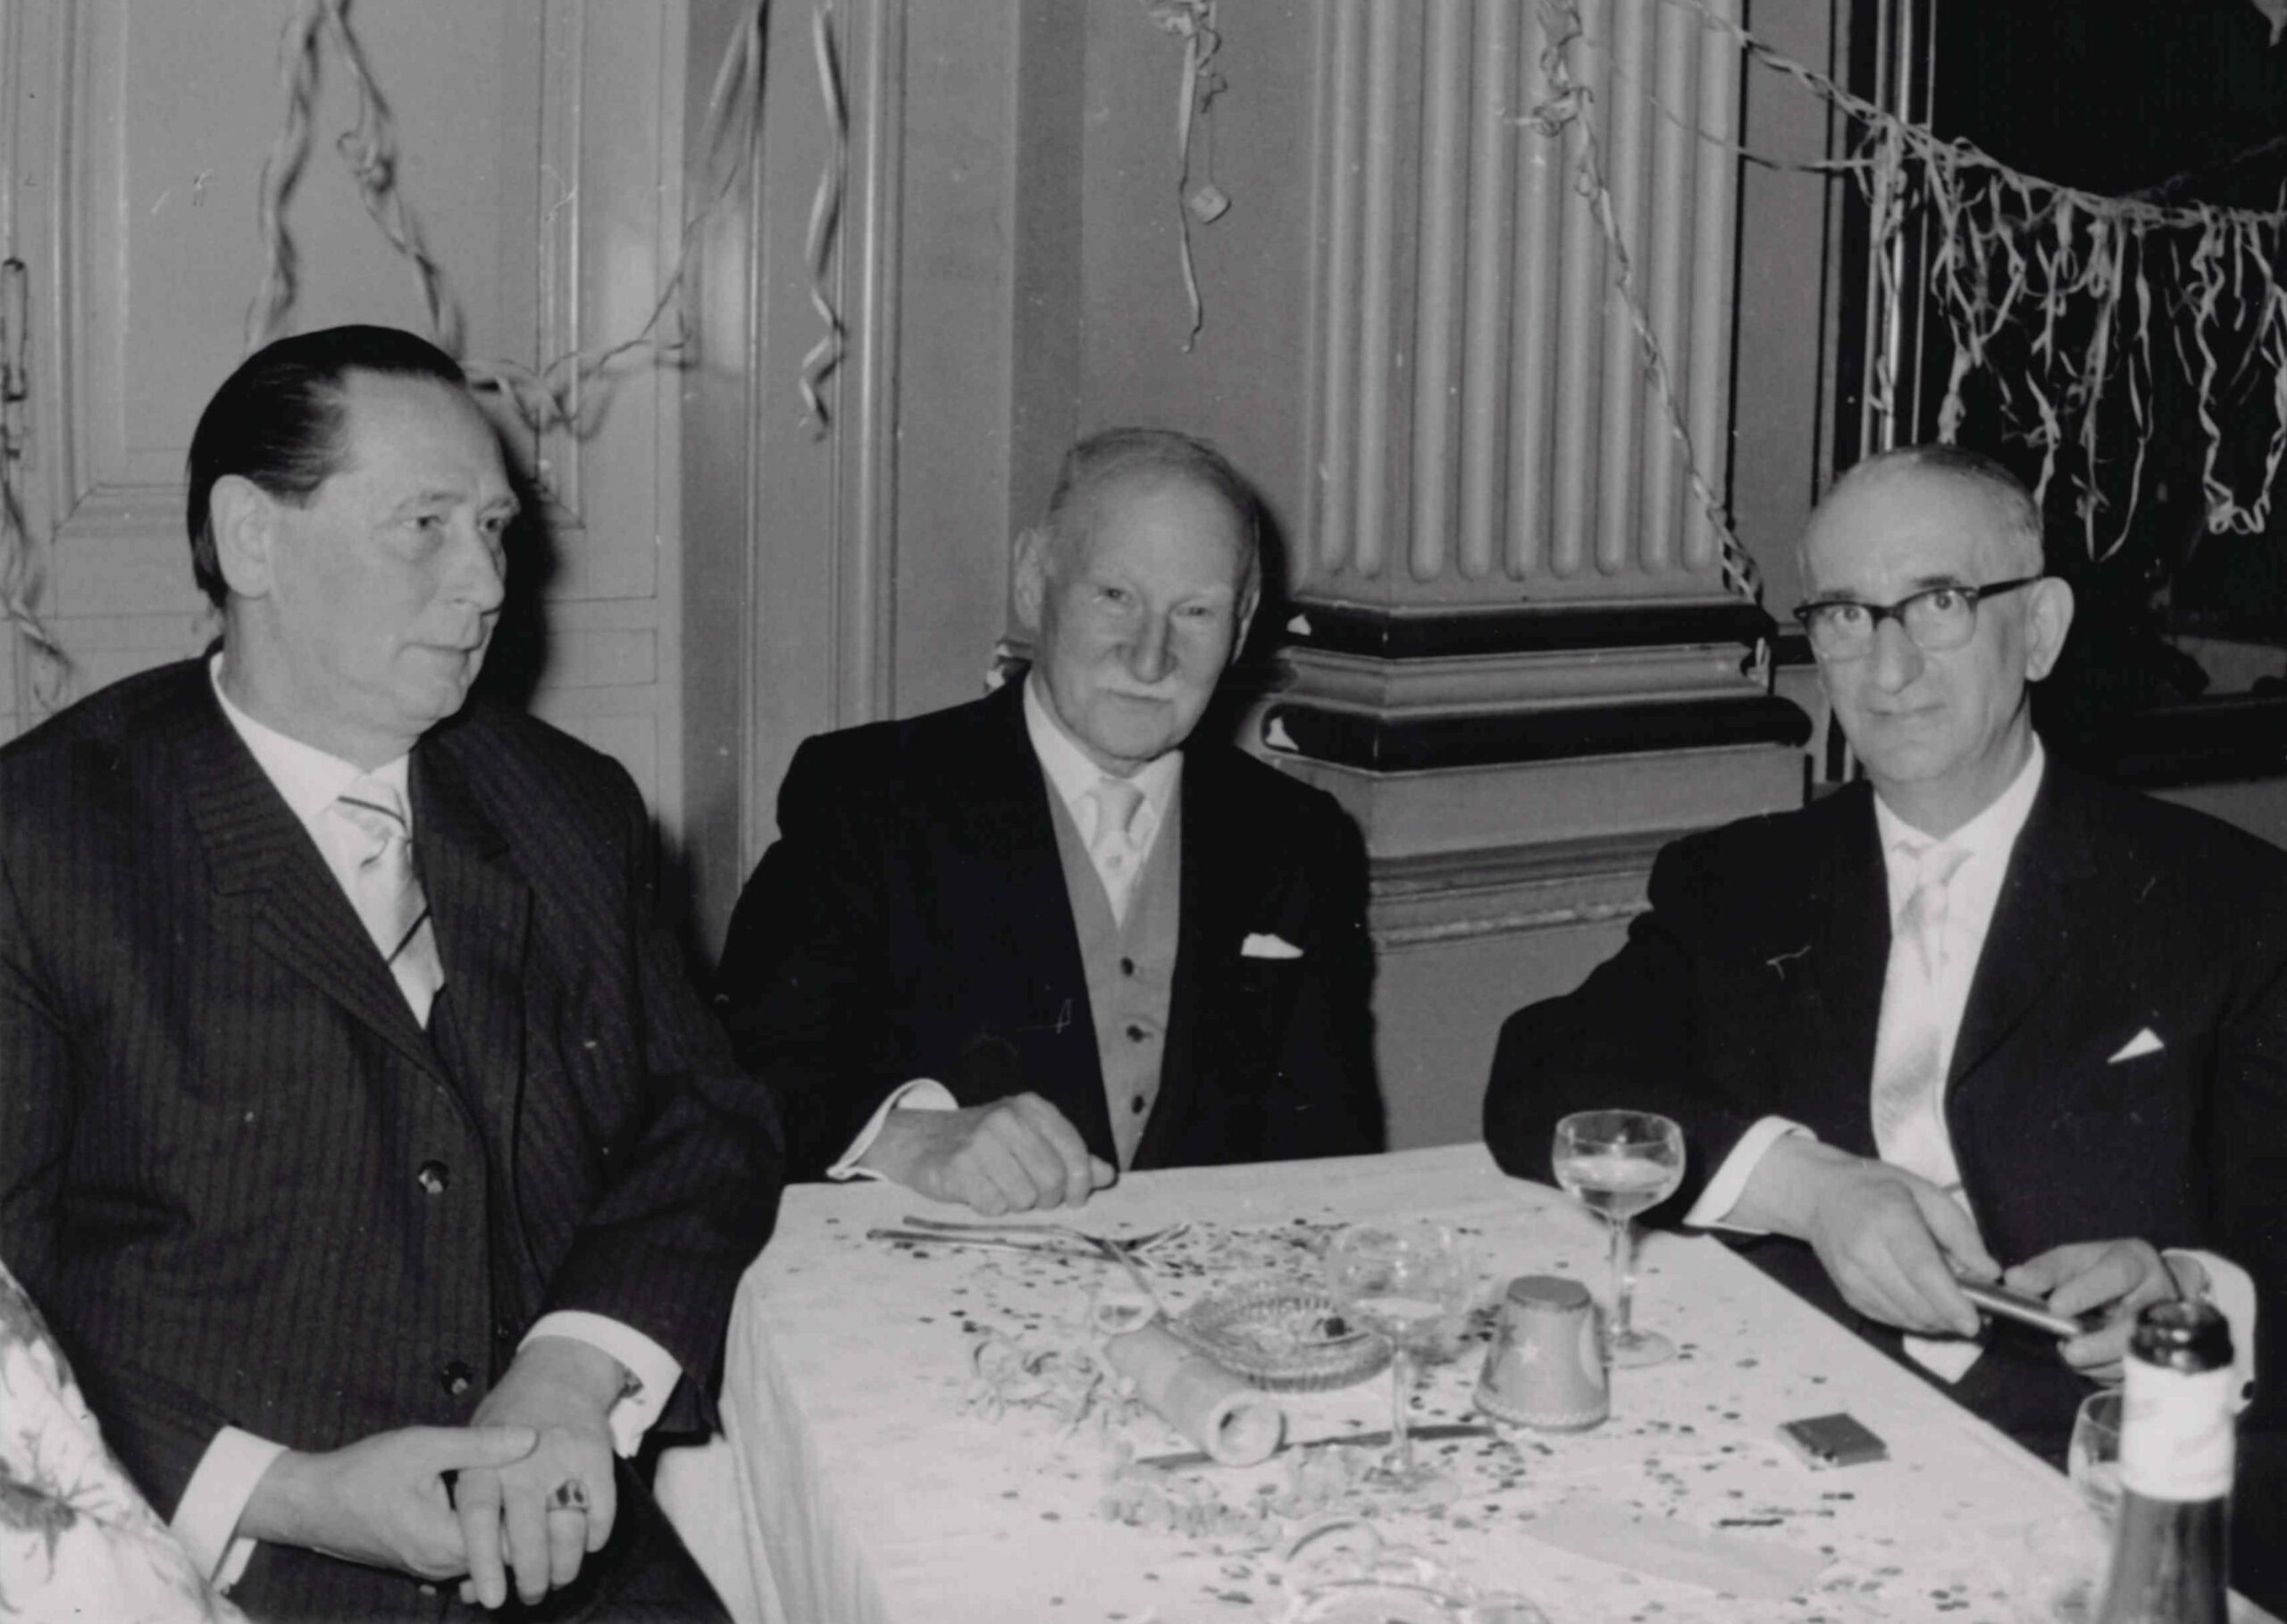 Д-р Фридрих Райхман (в центре), председатель еврейской общины Висбадена, с Вильгельмом Фройндом (слева), председателем Общества христианско-еврейского сотрудничества, на мероприятии общины, ок. 1963 г. Коллекция Еврейской Общины Висбадена